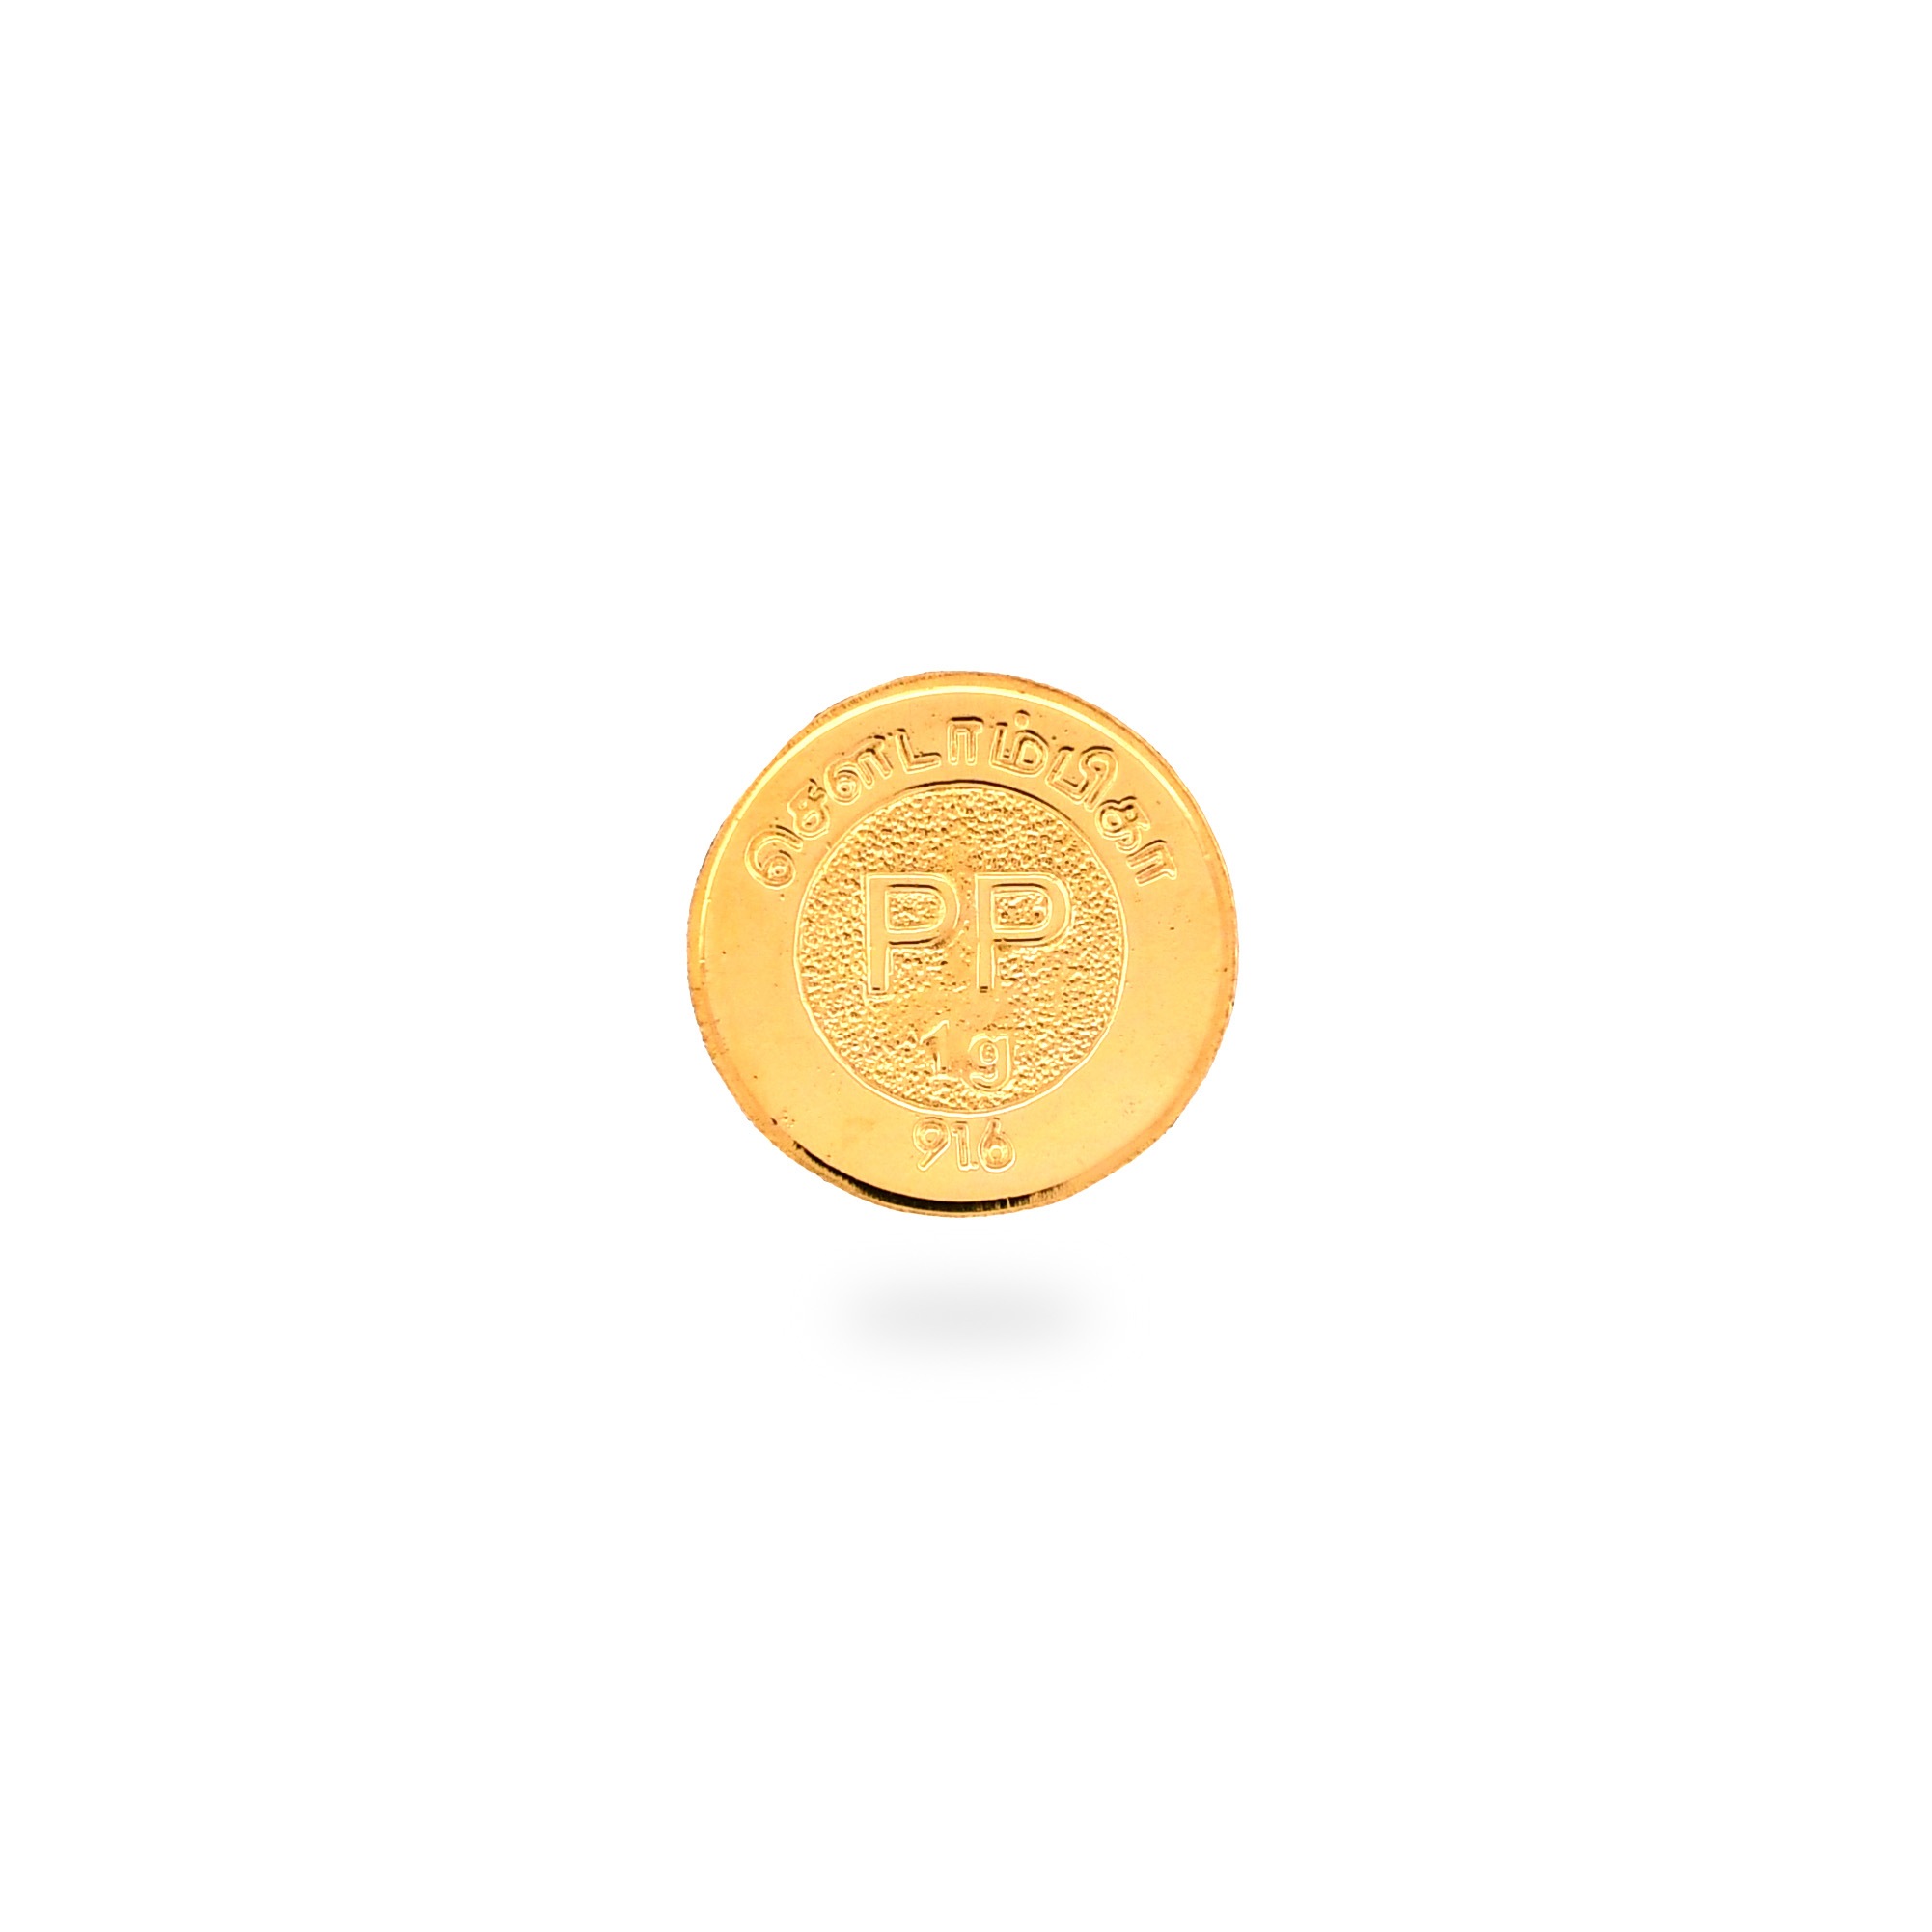 Hallmark 22kt 1 Gram Gold Coin